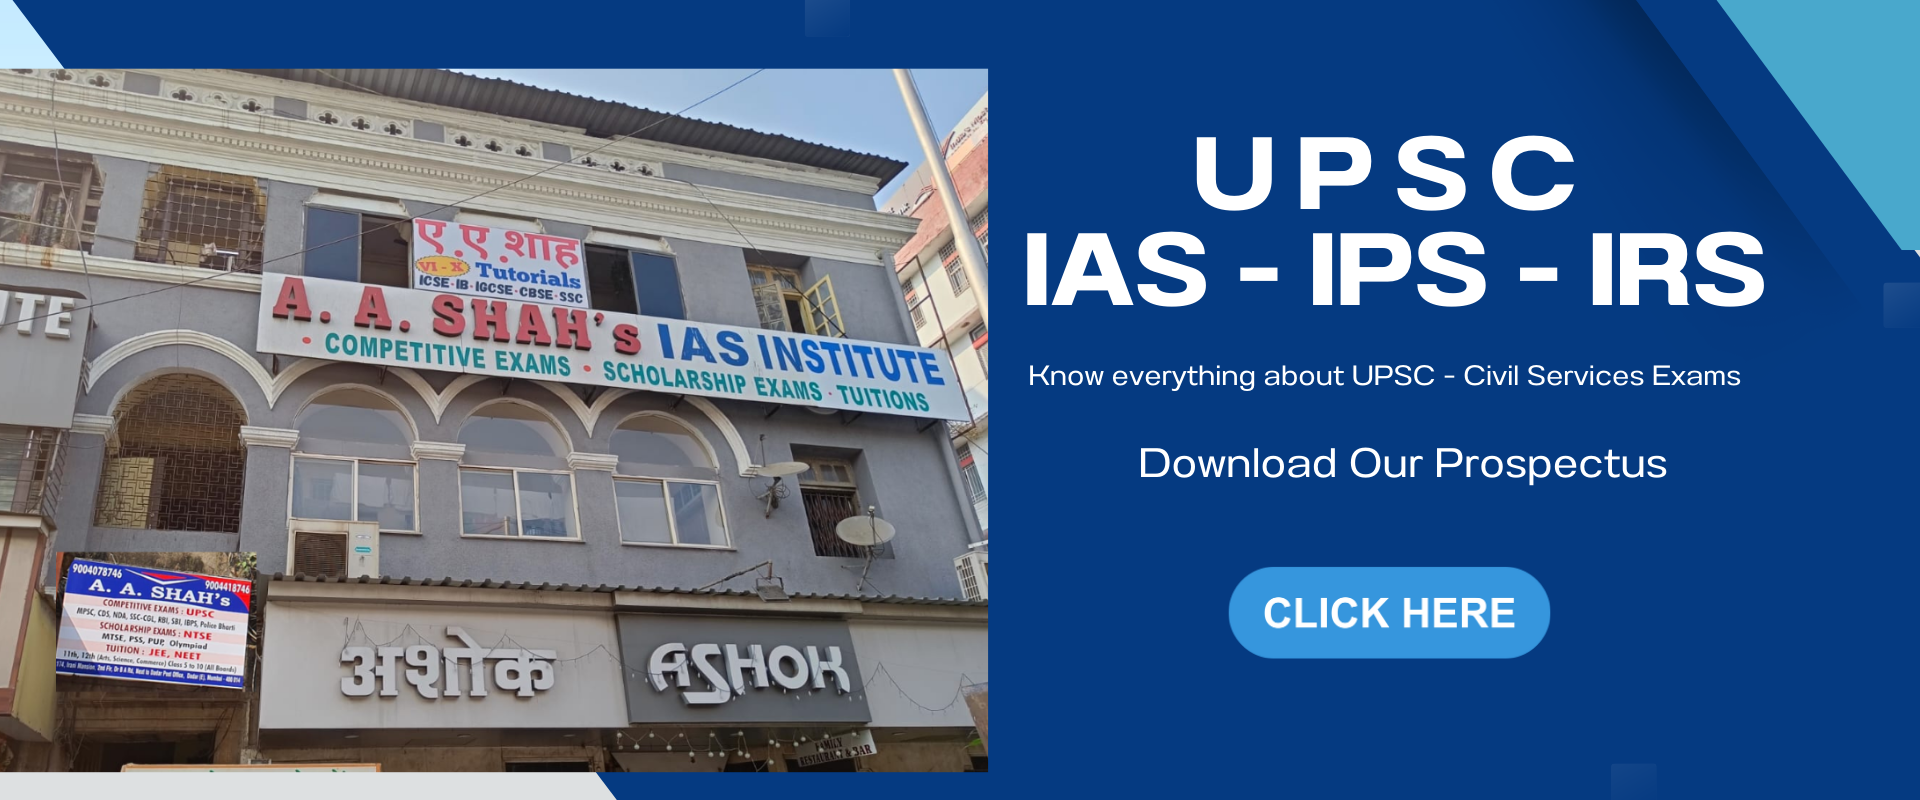 A A shah's IAS Institute, Dadar (East), Mumbai